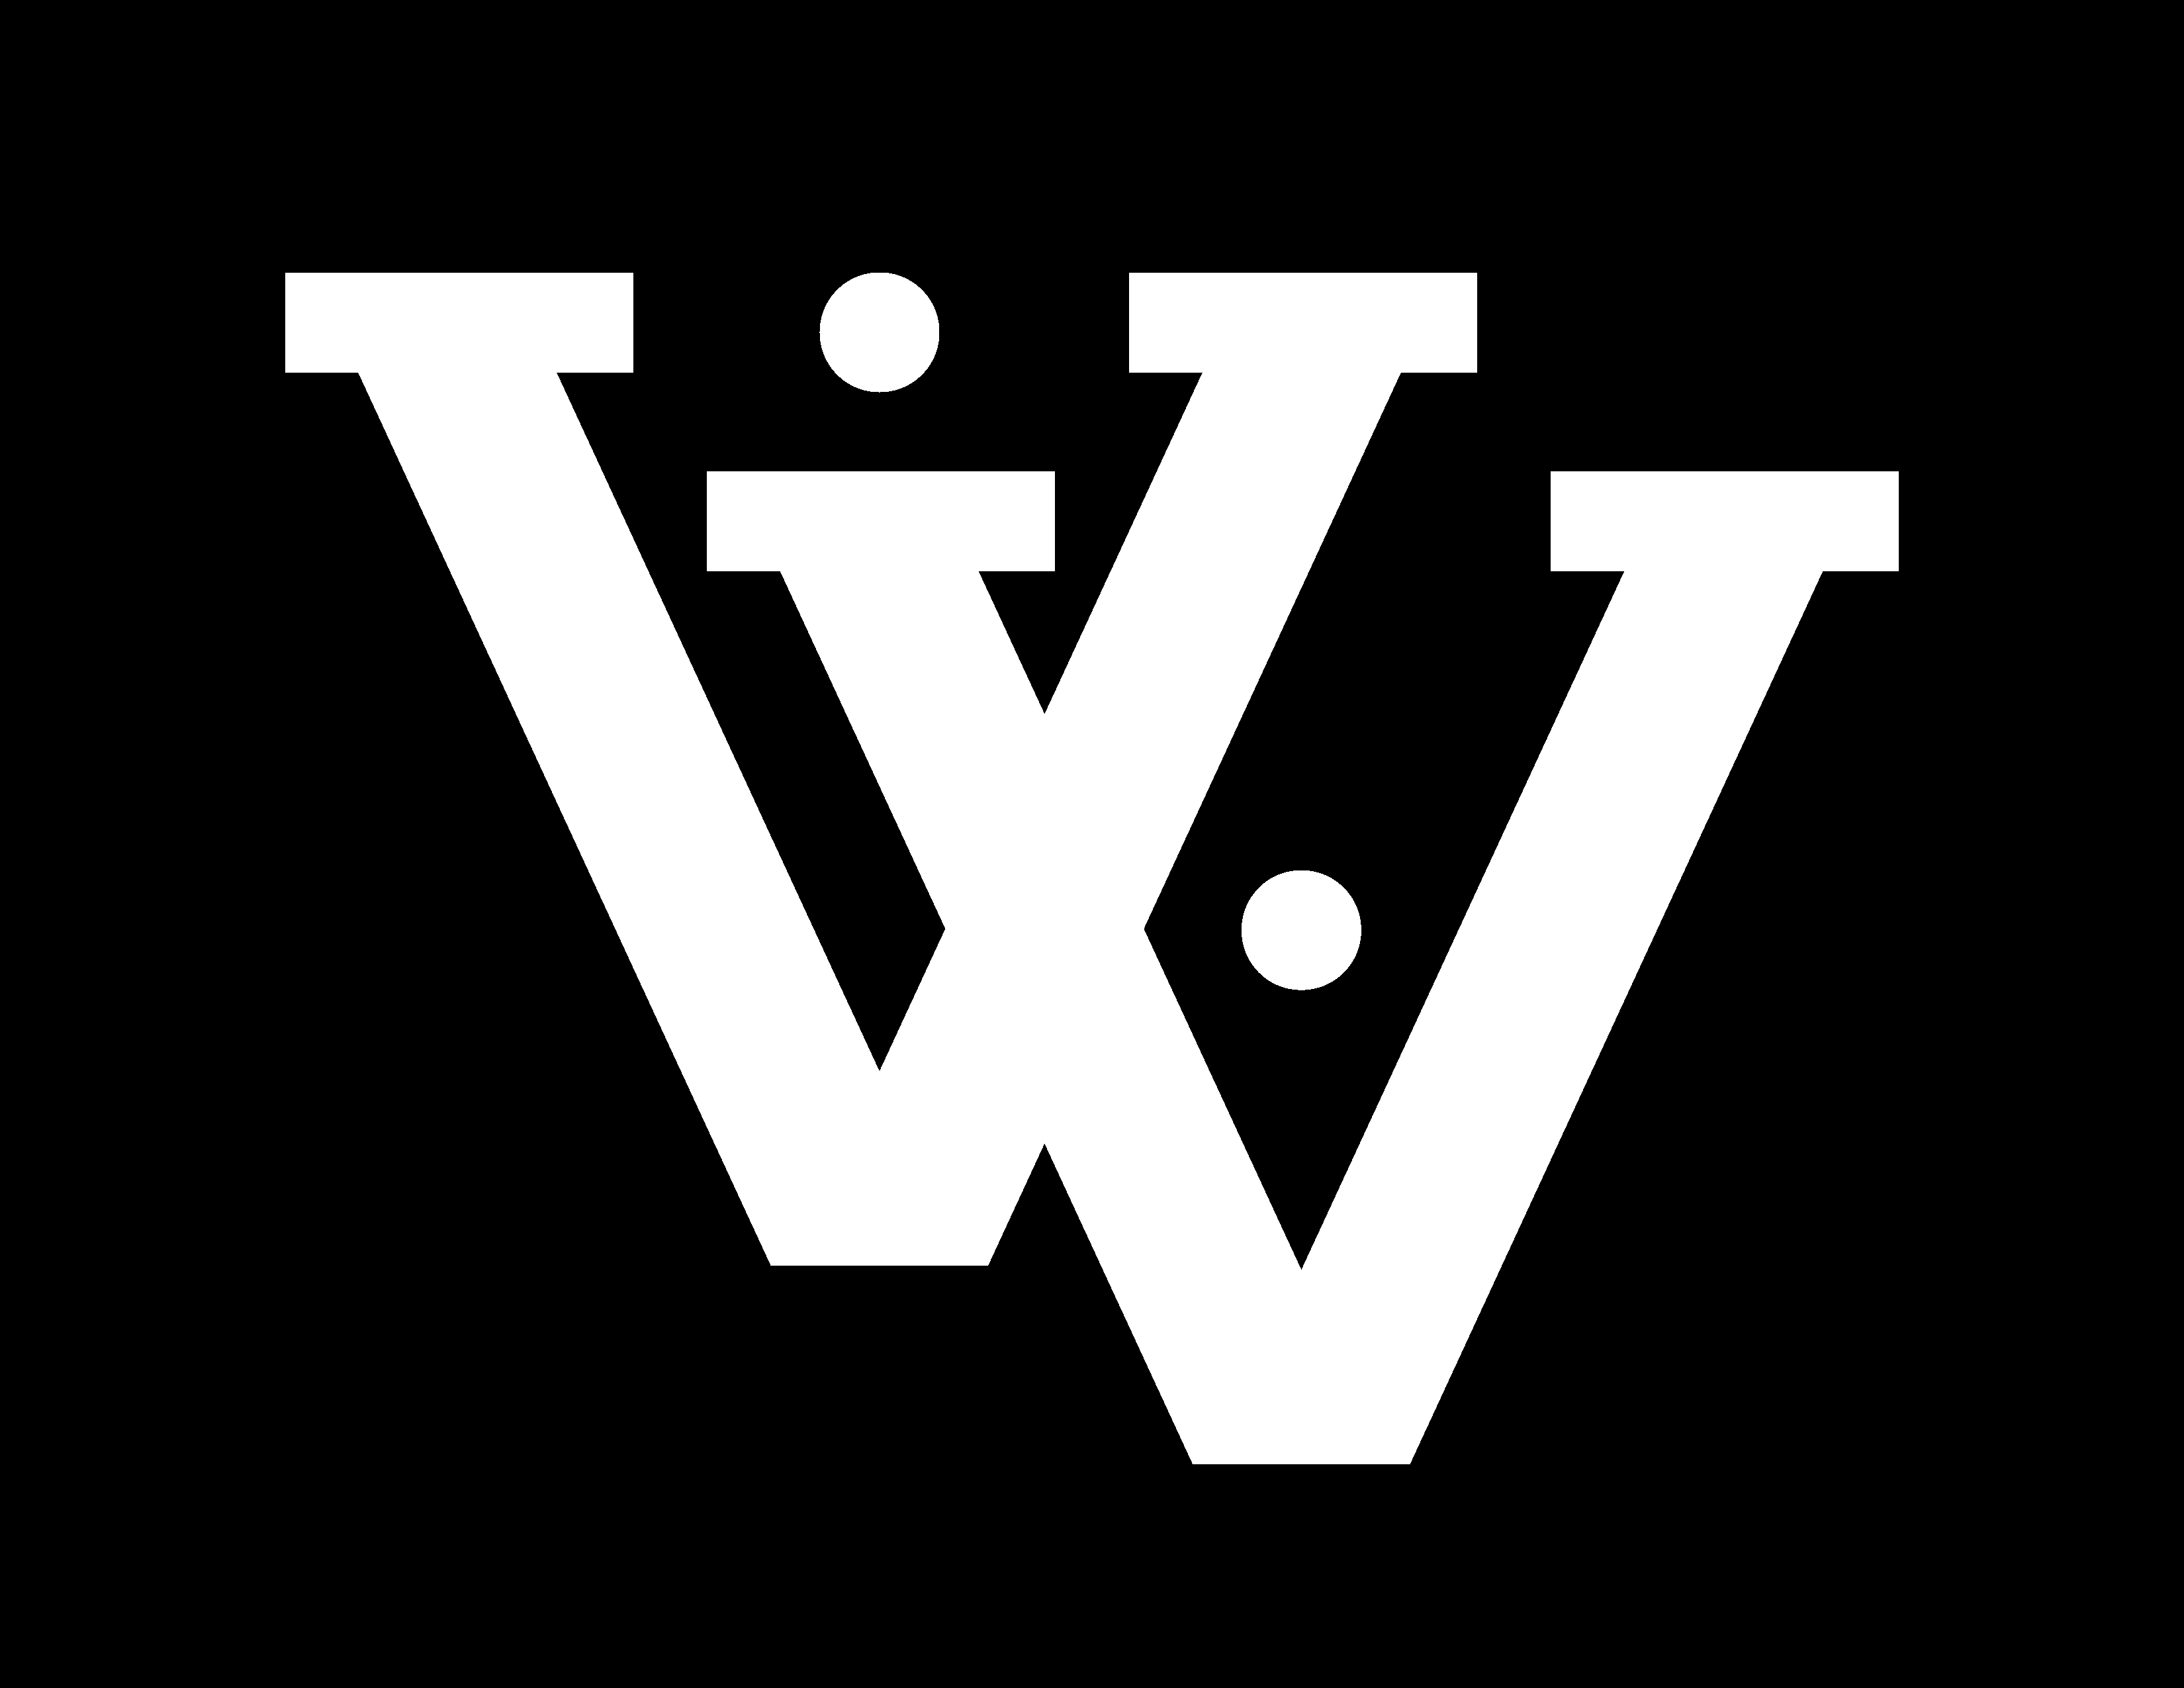 File:Louis Vuitton LV logo.png - Wikipedia